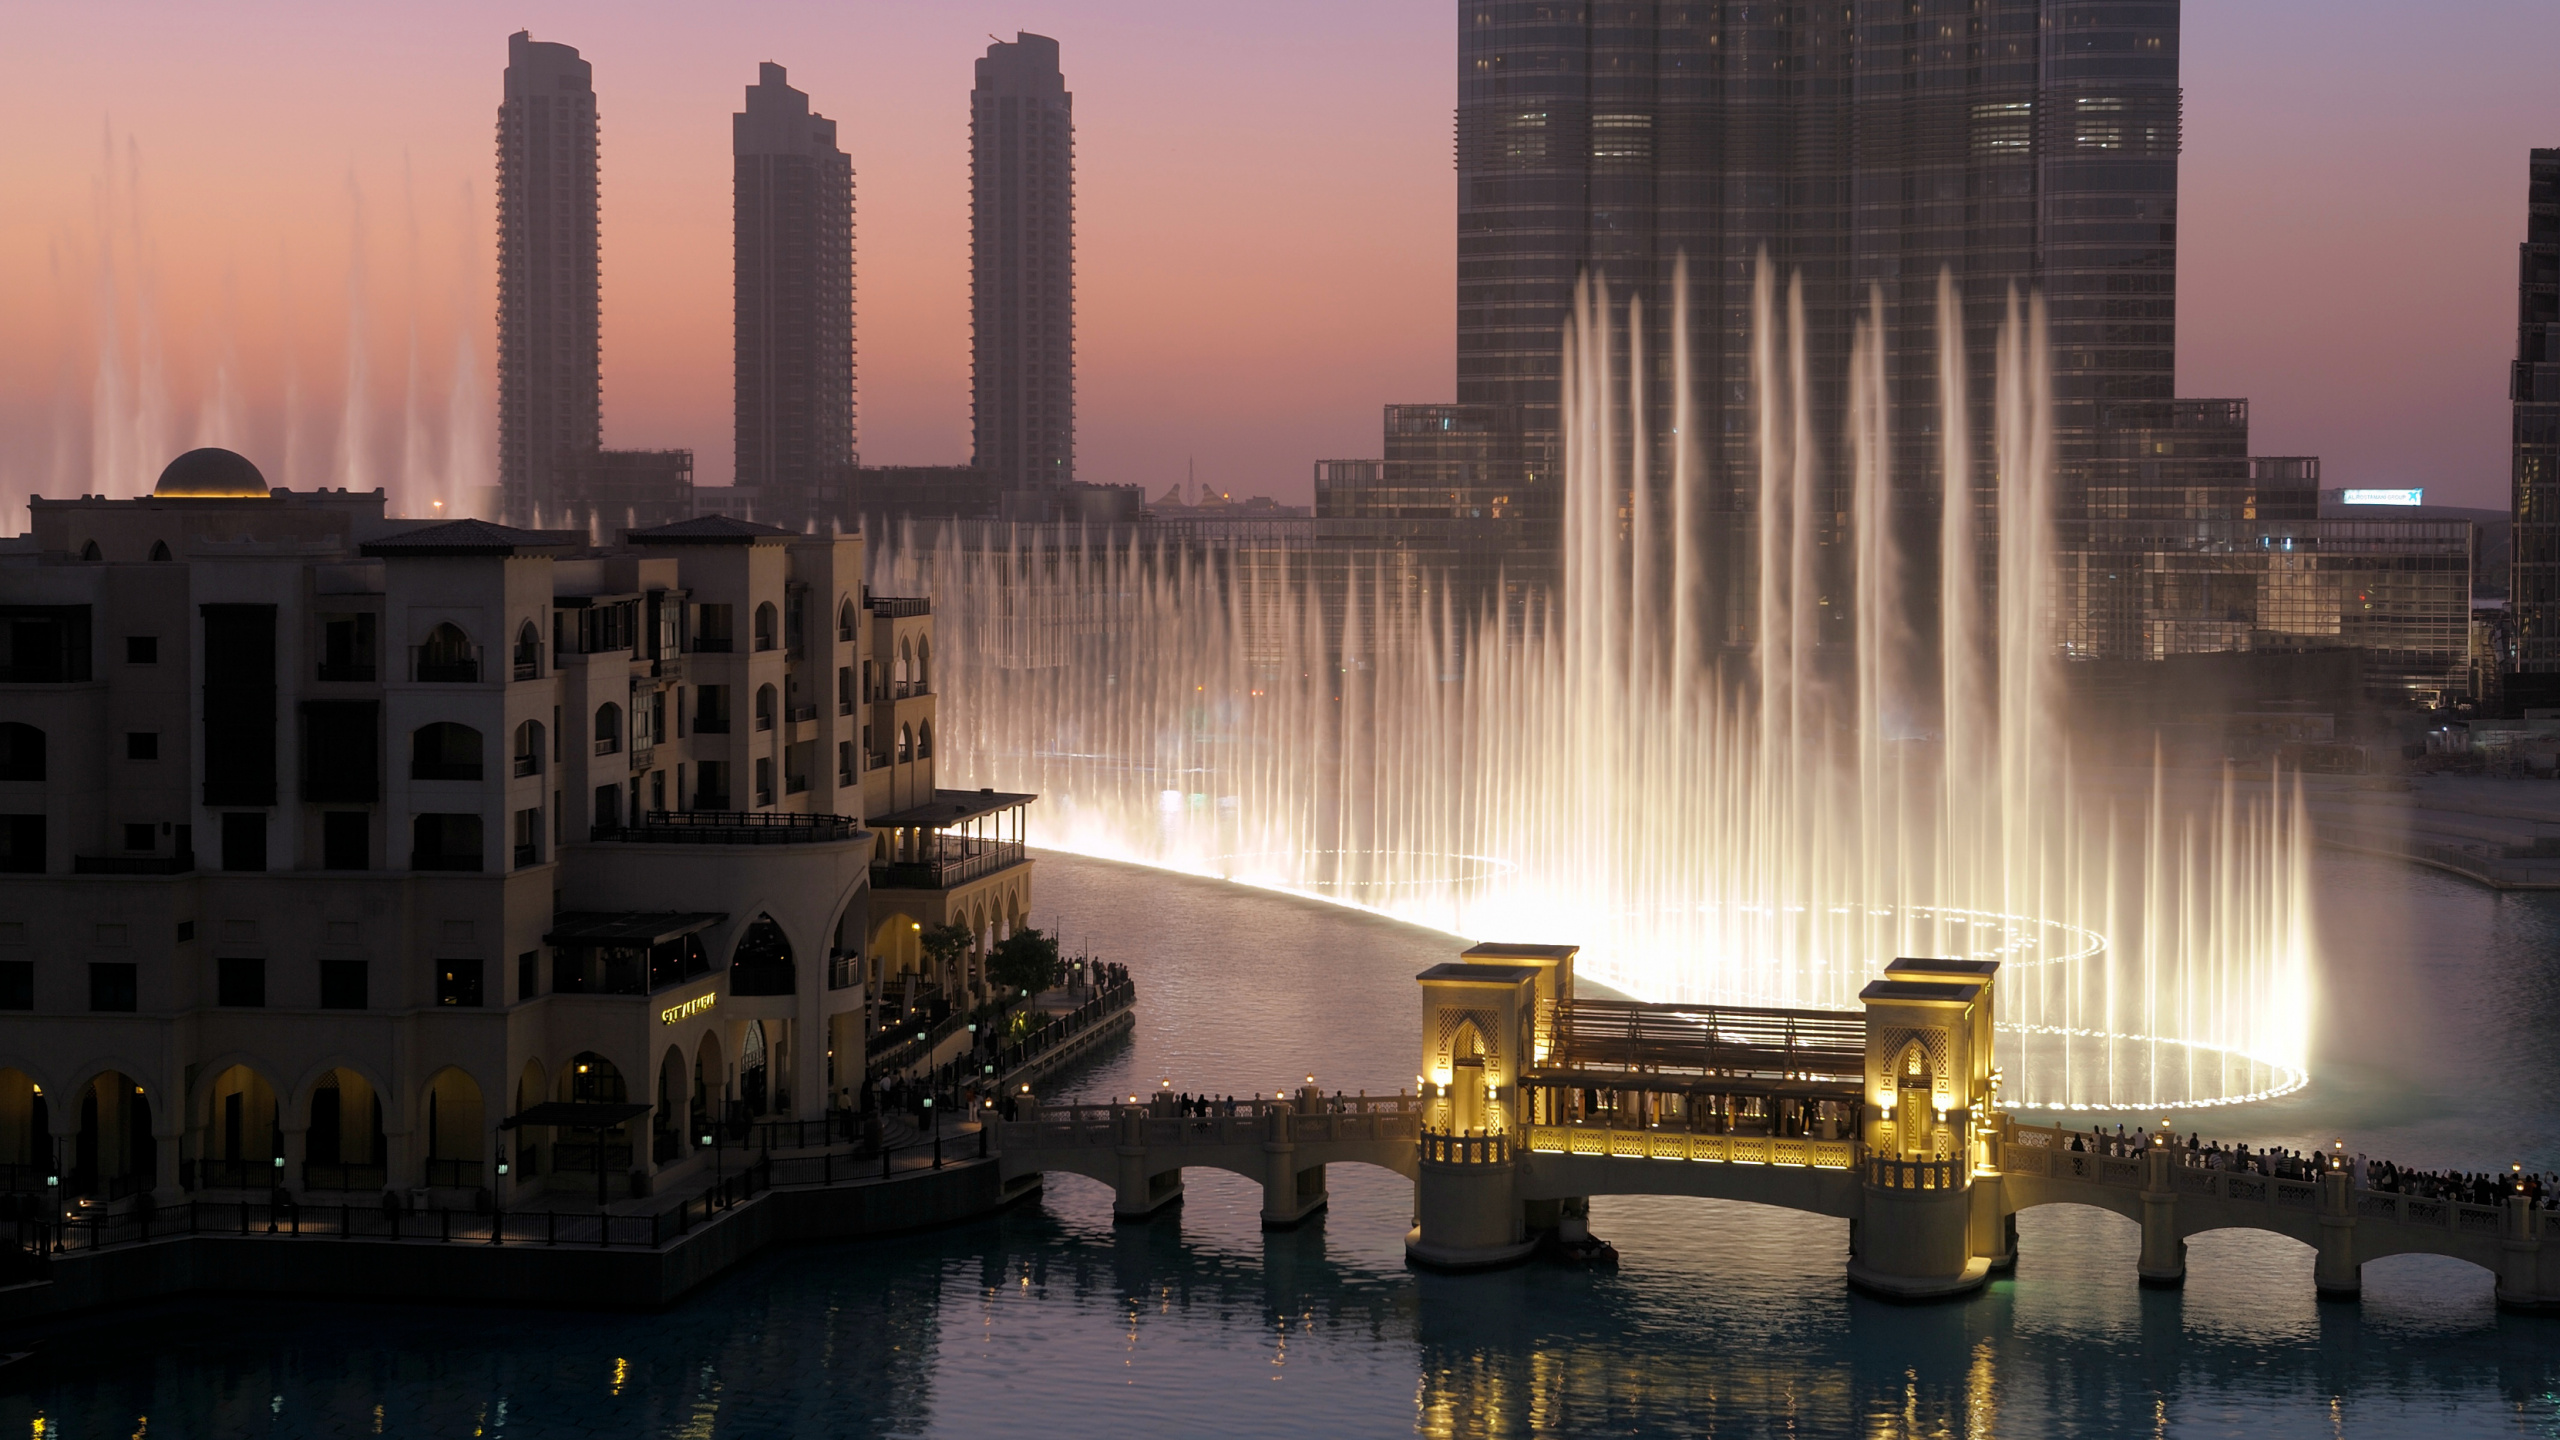 迪拜购物中心, 迪拜喷泉, 哈利法塔, 城市, 里程碑 壁纸 2560x1440 允许